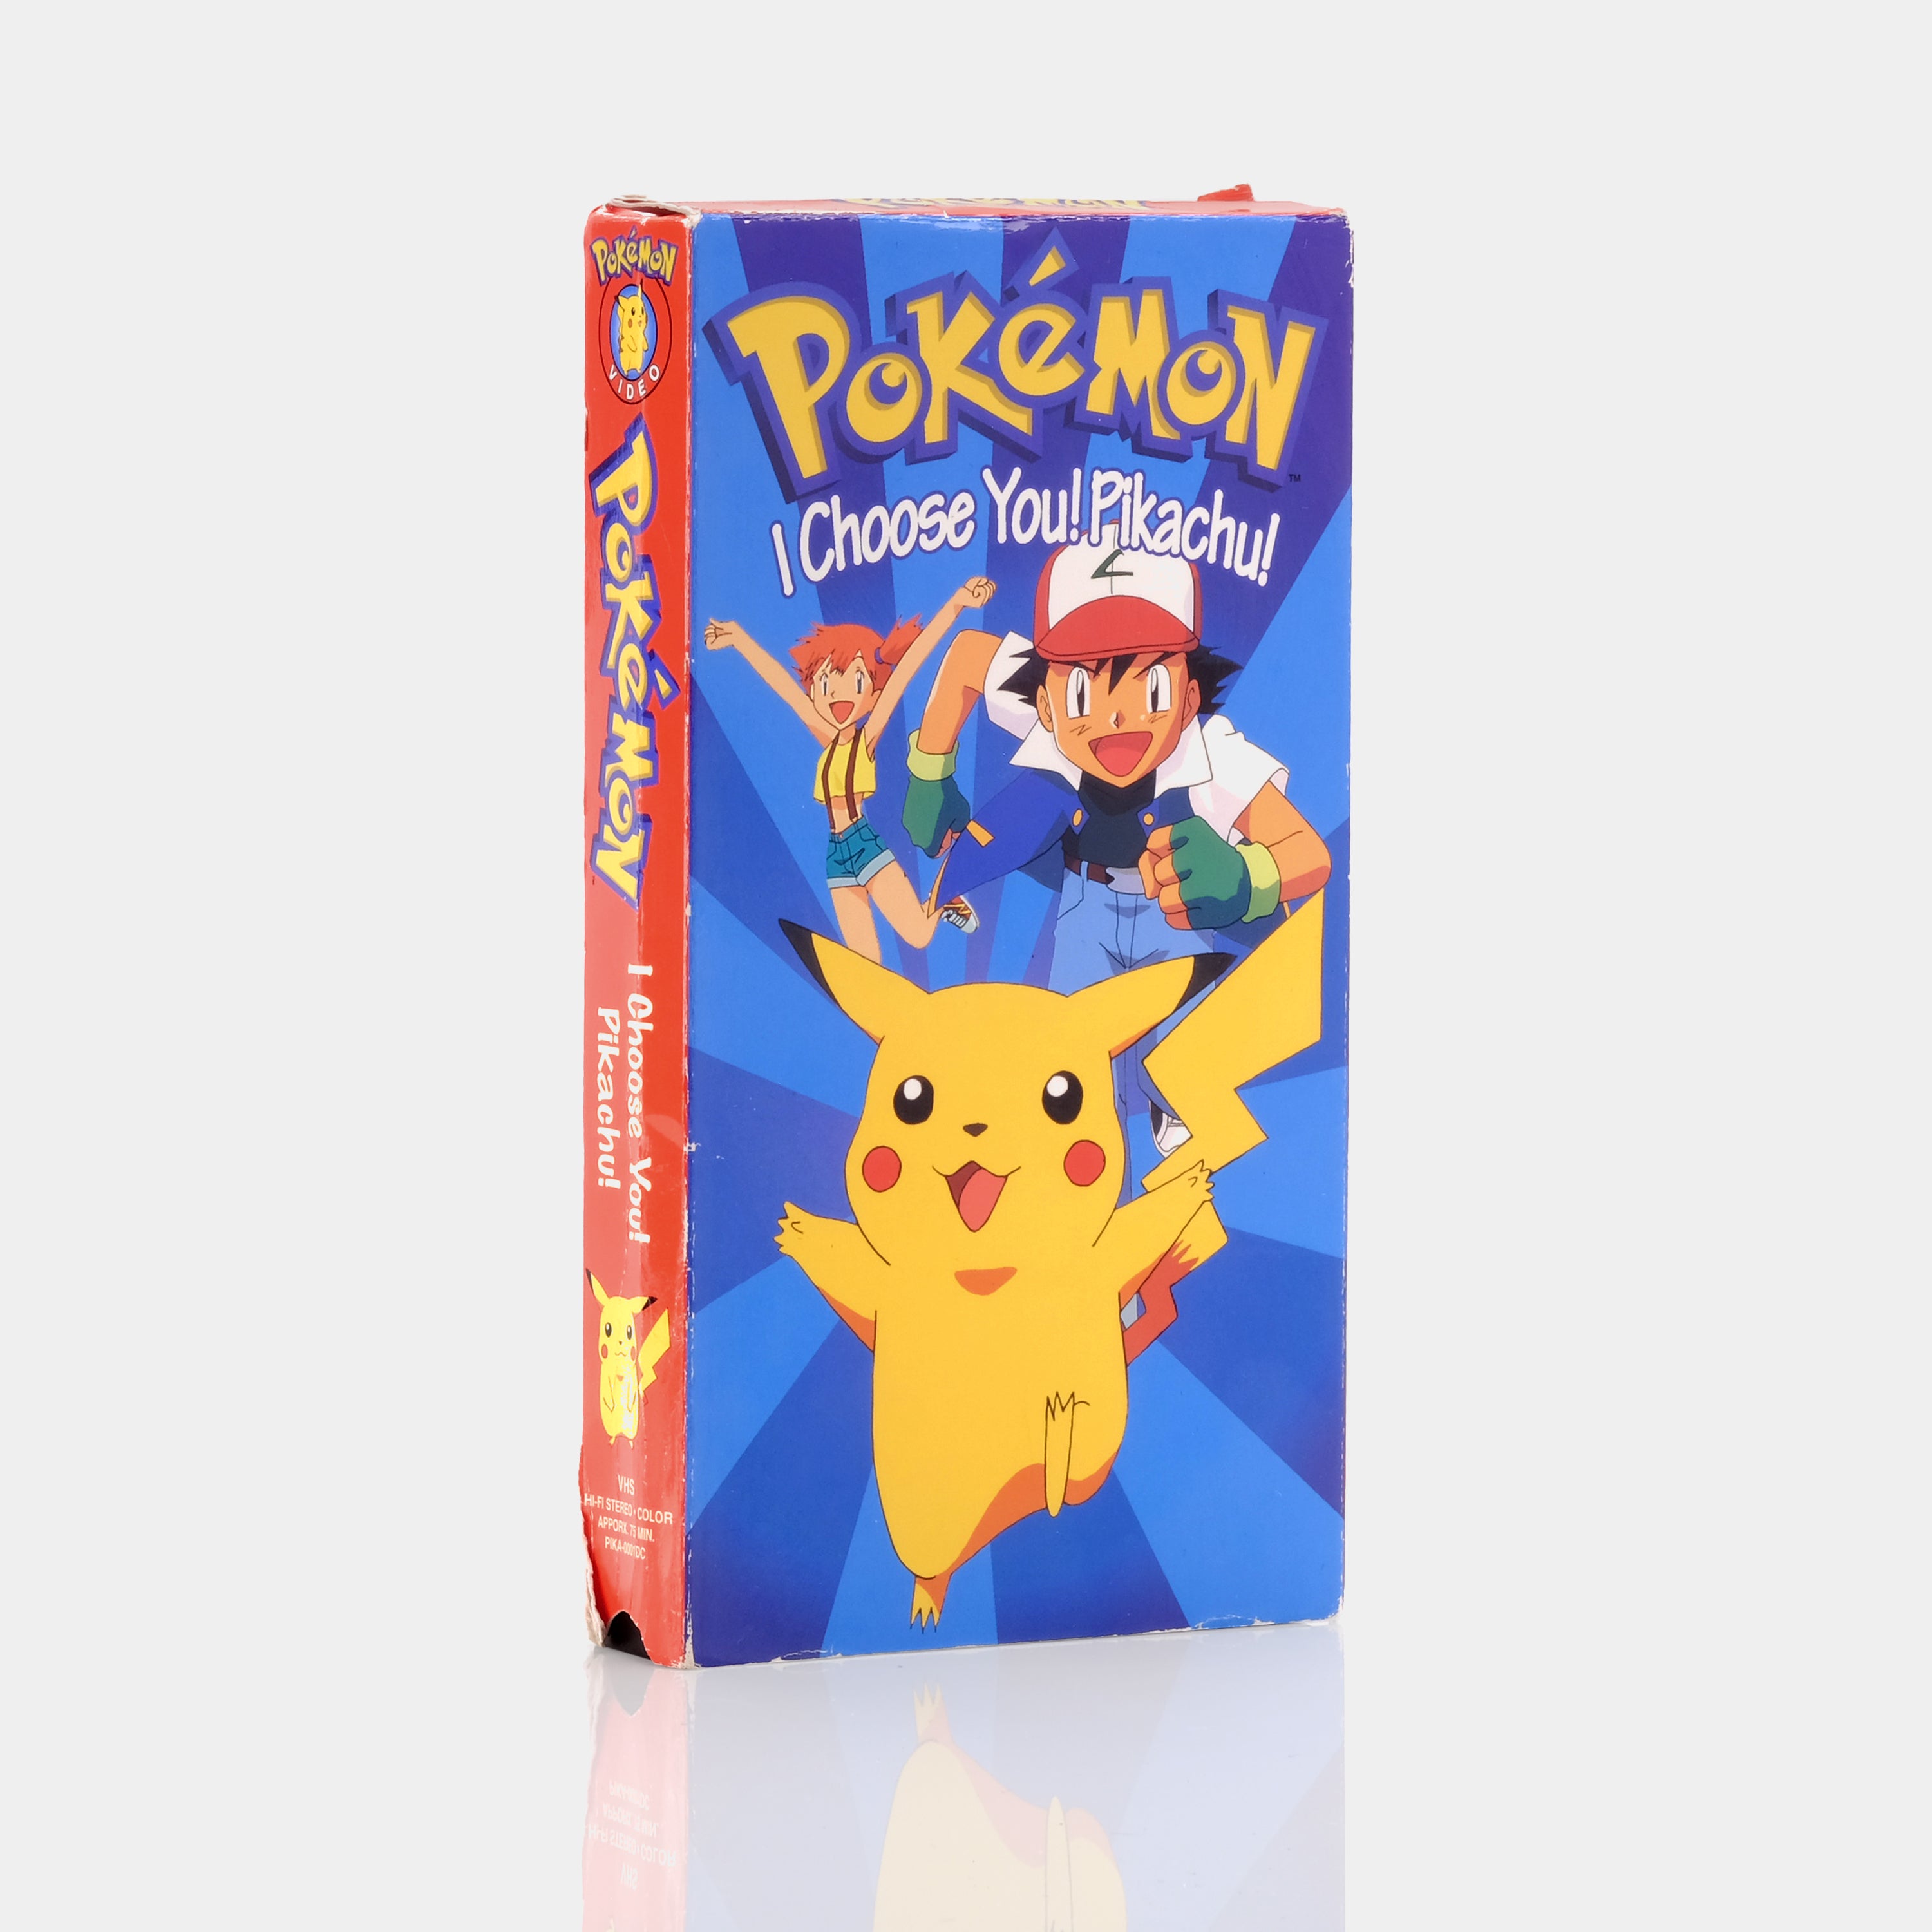 Pokémon: I Choose You! Pikachu! VHS Tape